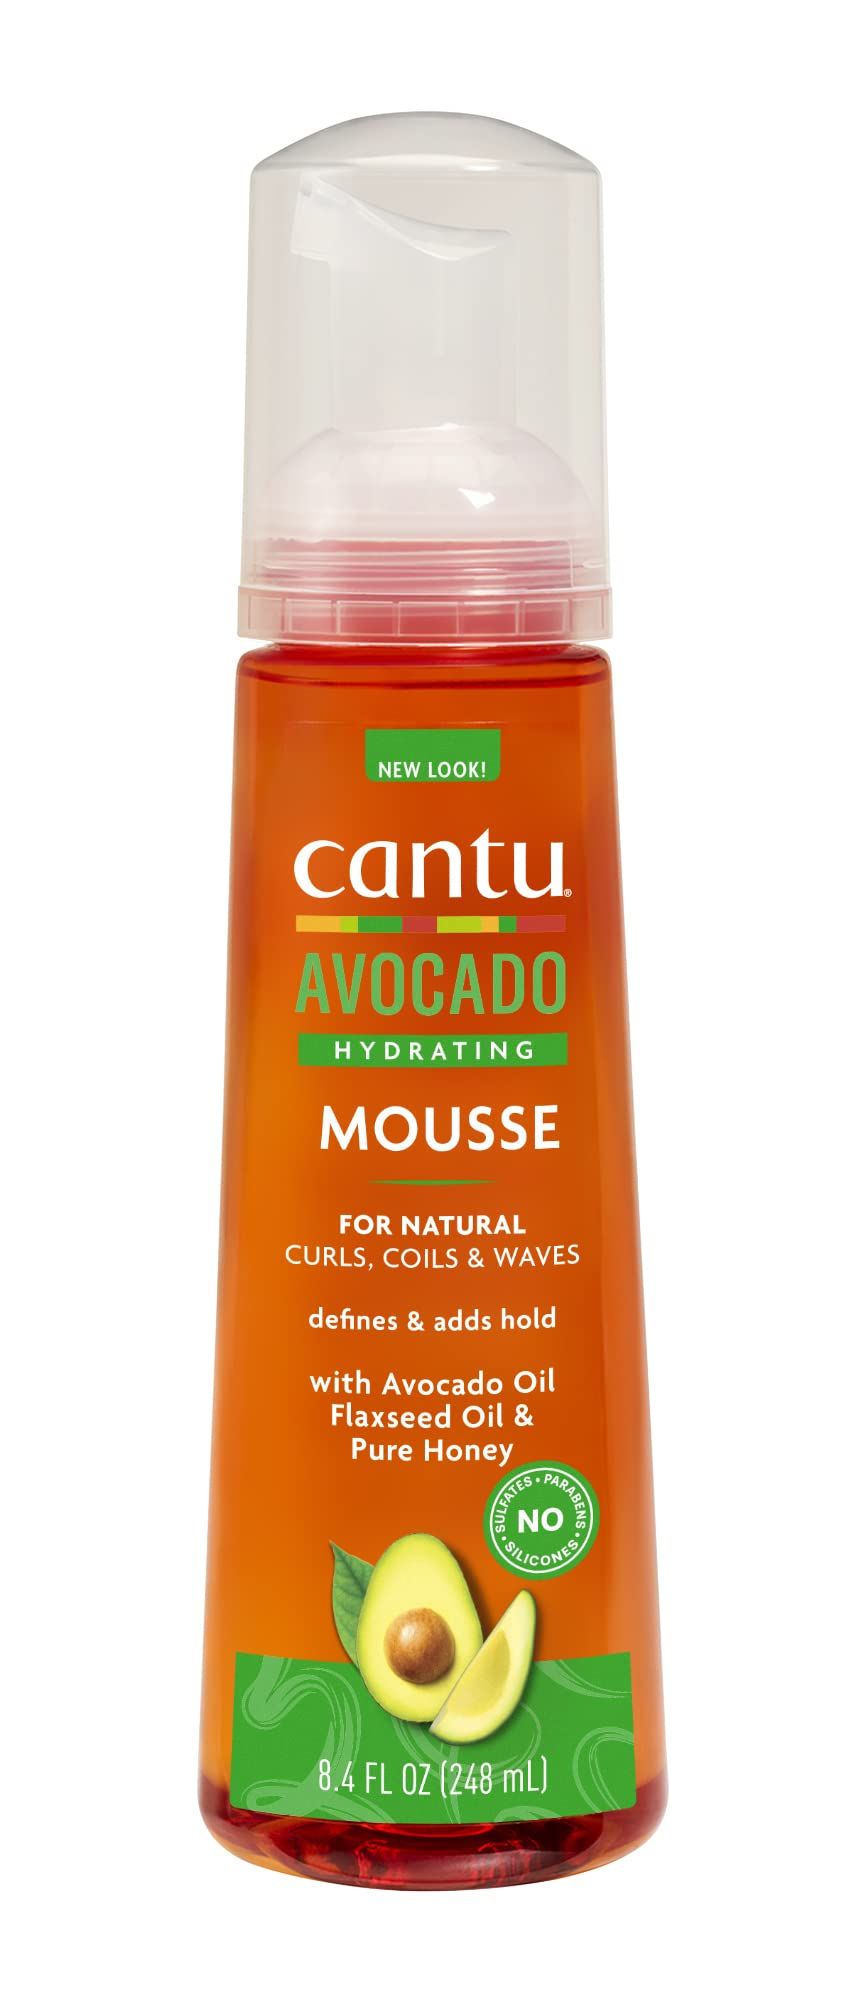 Cantu Avocado Hydrating Mousse, 8.4 fl oz (248 ml) | Amazon (US)